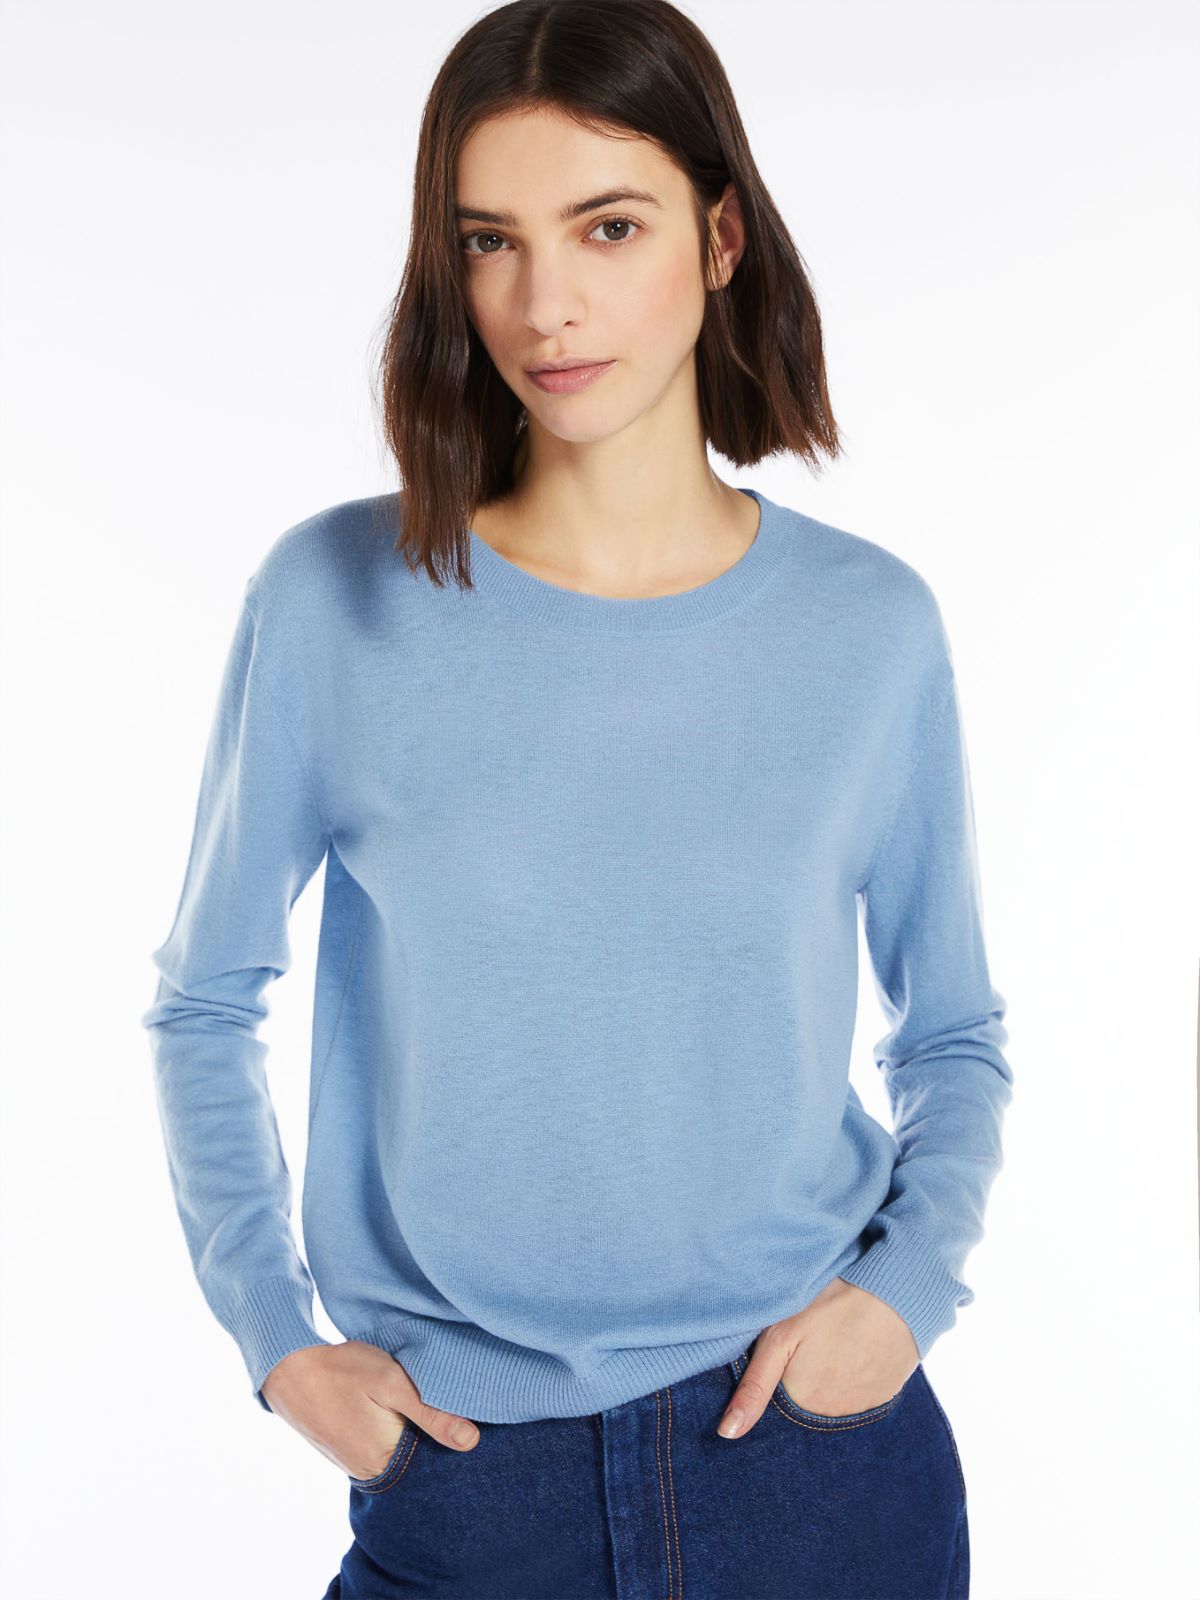 Cashmere-blend sweater - LIGHT BLUE - Weekend Max Mara - 4